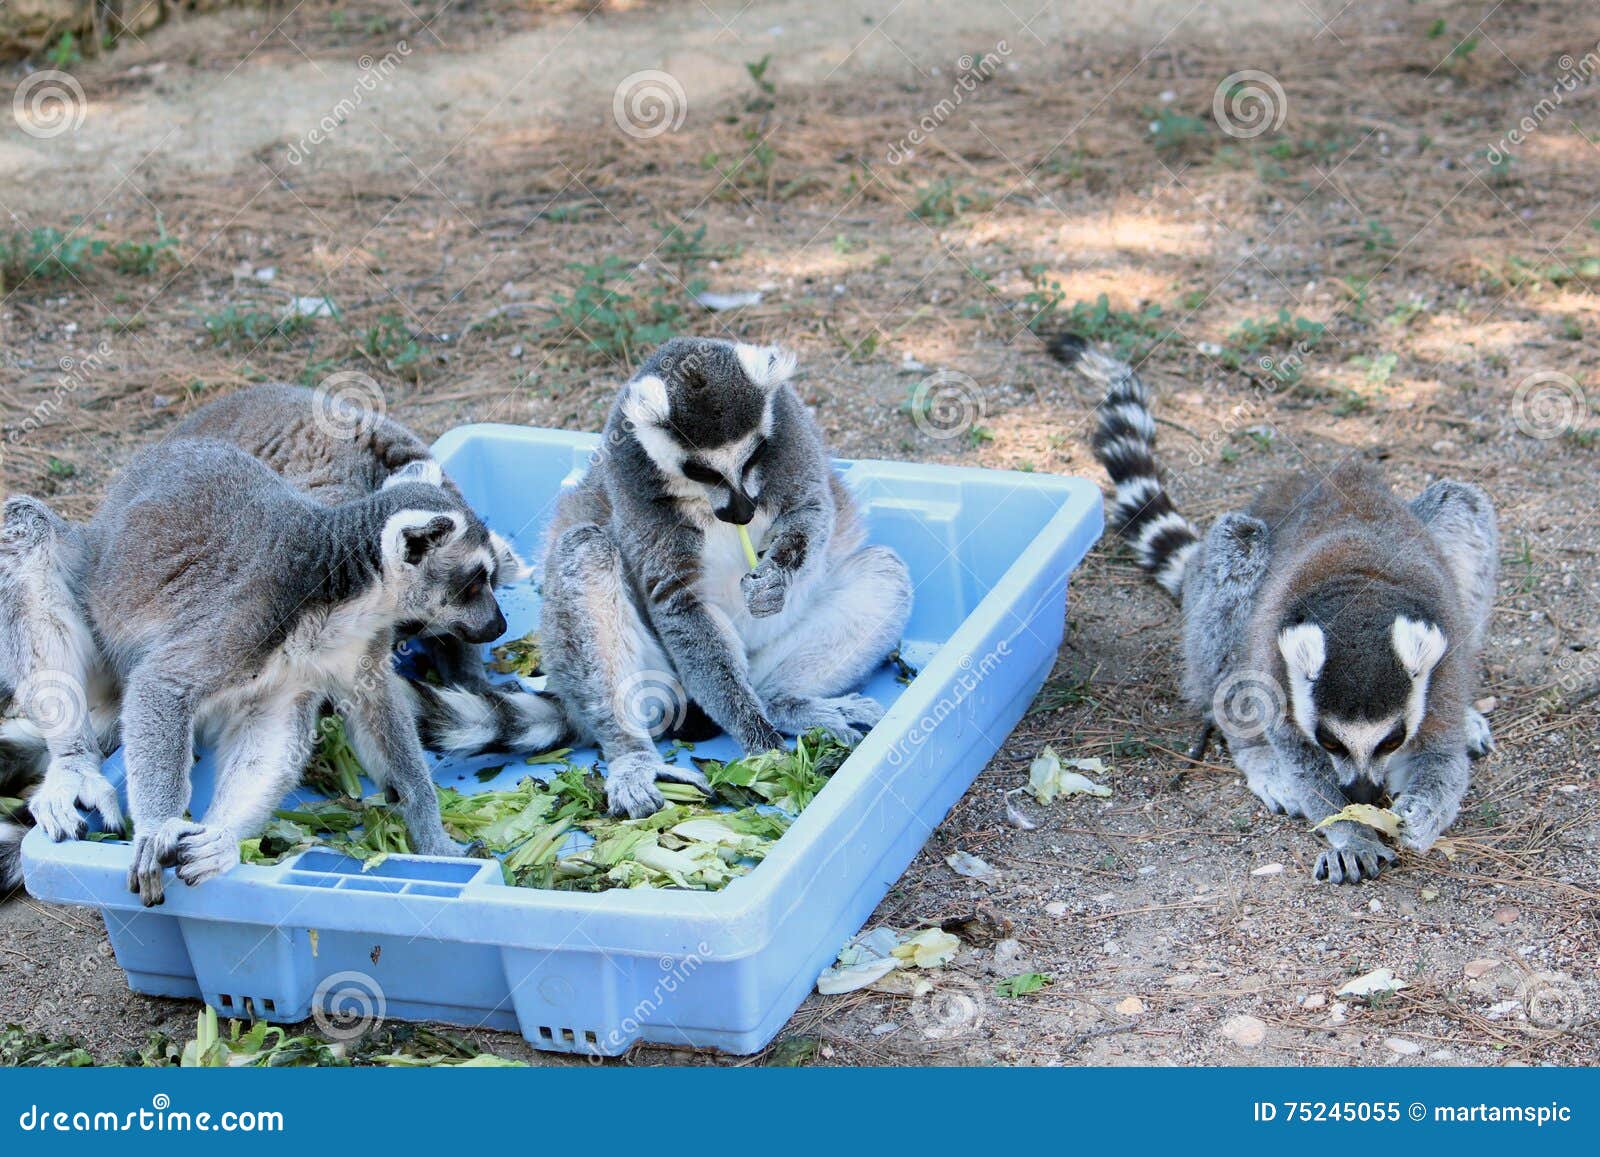 ring-tailed lemurs eating